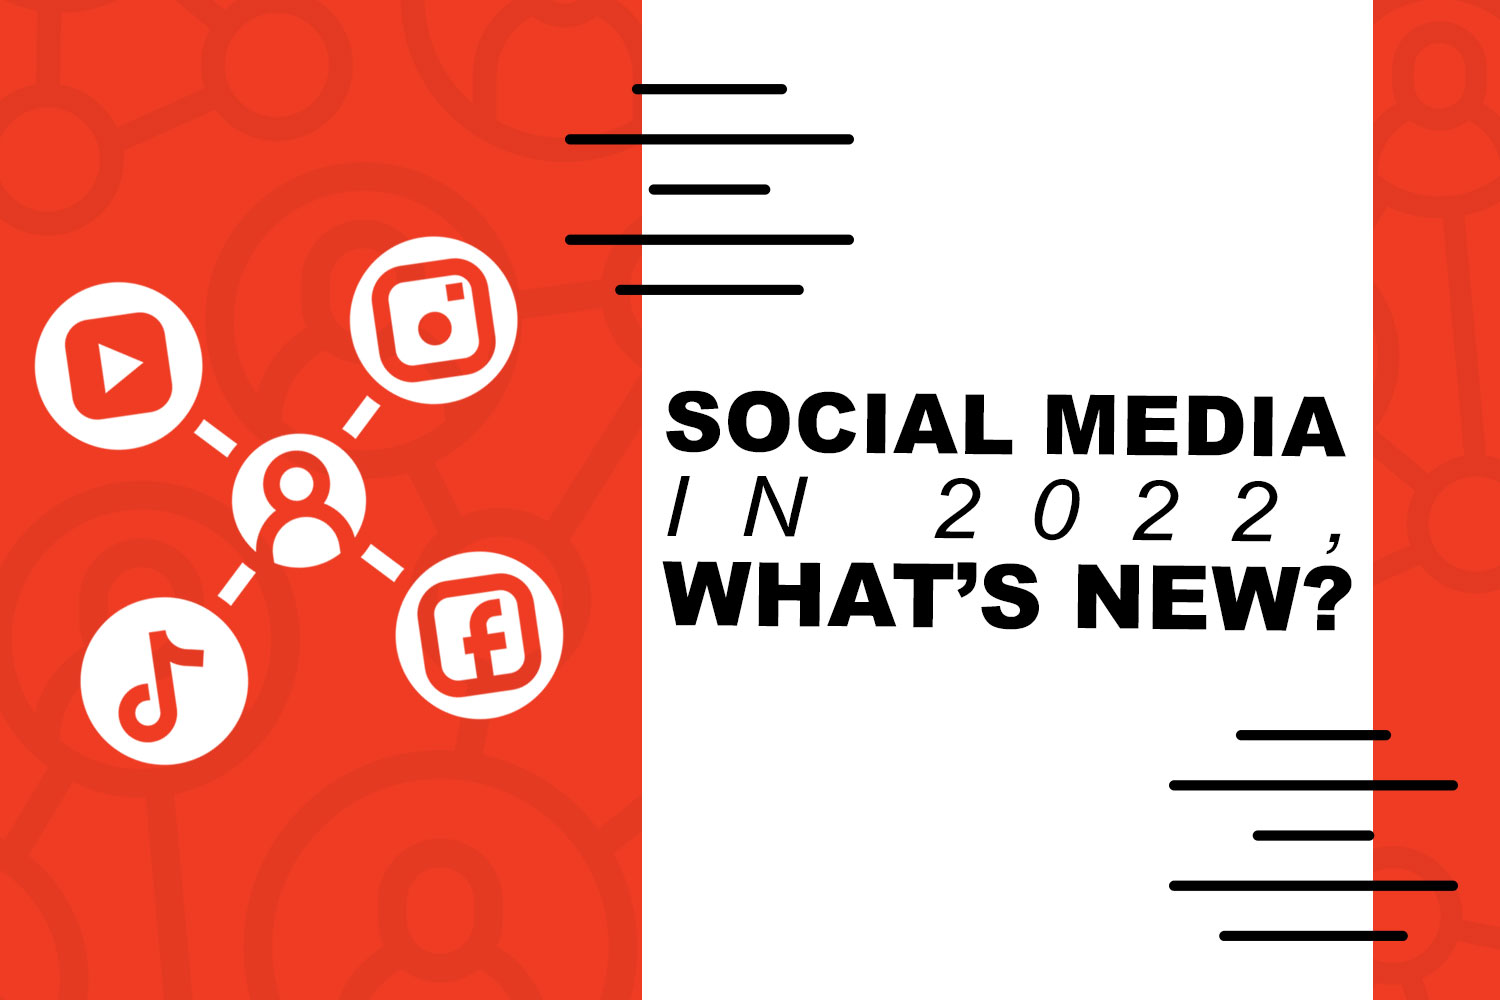 Social Media in 2022, What's New?